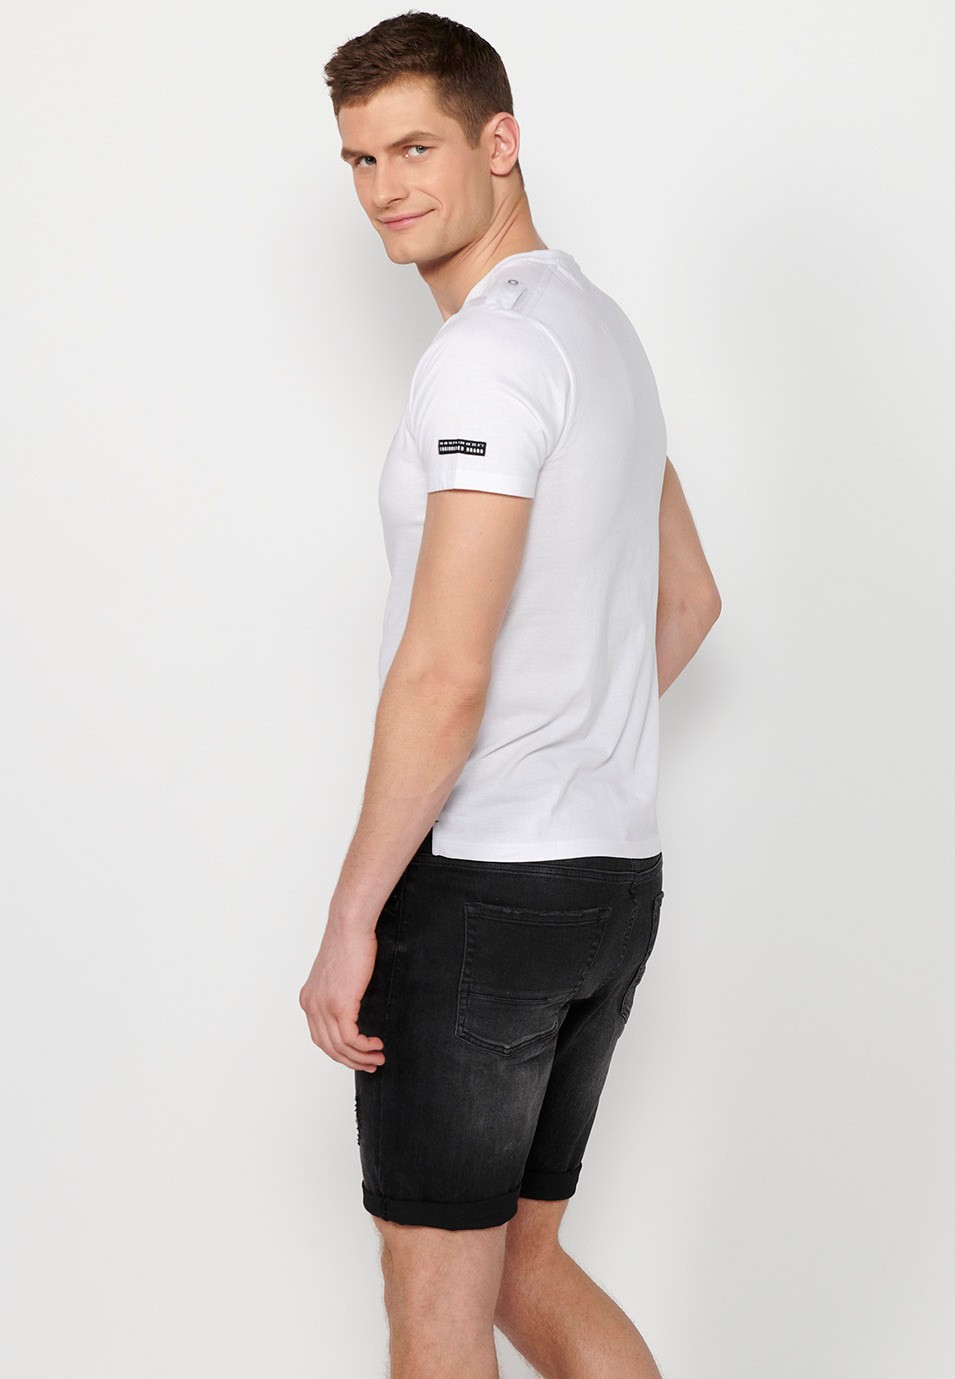 T-shirt homme blanc à manches courtes en coton, col rond avec ouverture boutonnée